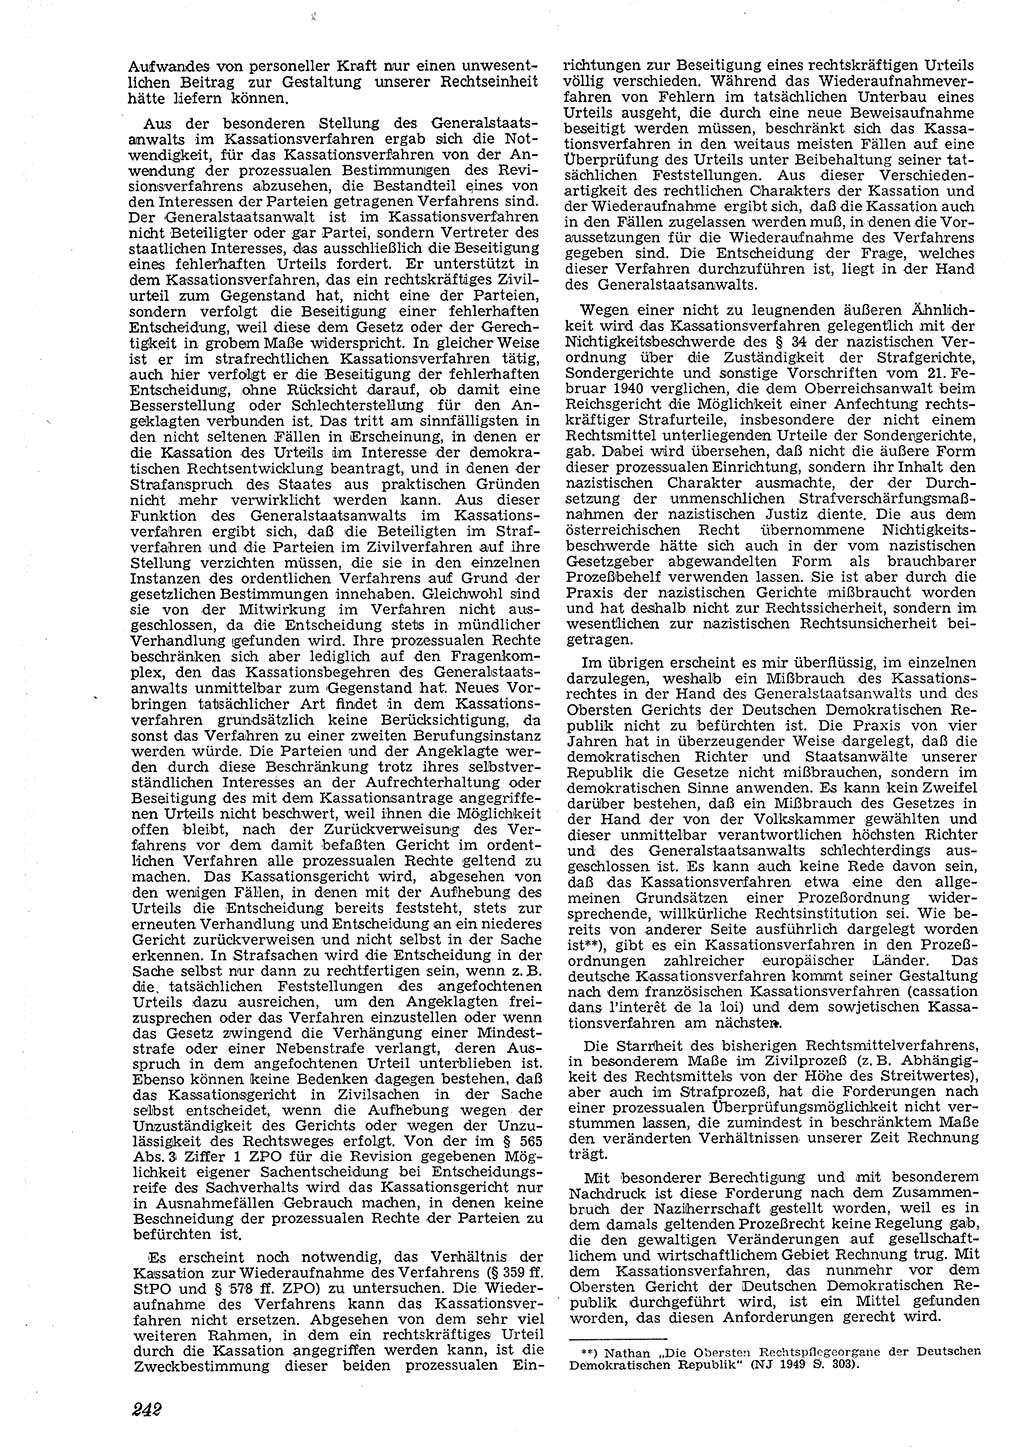 Neue Justiz (NJ), Zeitschrift für Recht und Rechtswissenschaft [Deutsche Demokratische Republik (DDR)], 4. Jahrgang 1950, Seite 242 (NJ DDR 1950, S. 242)